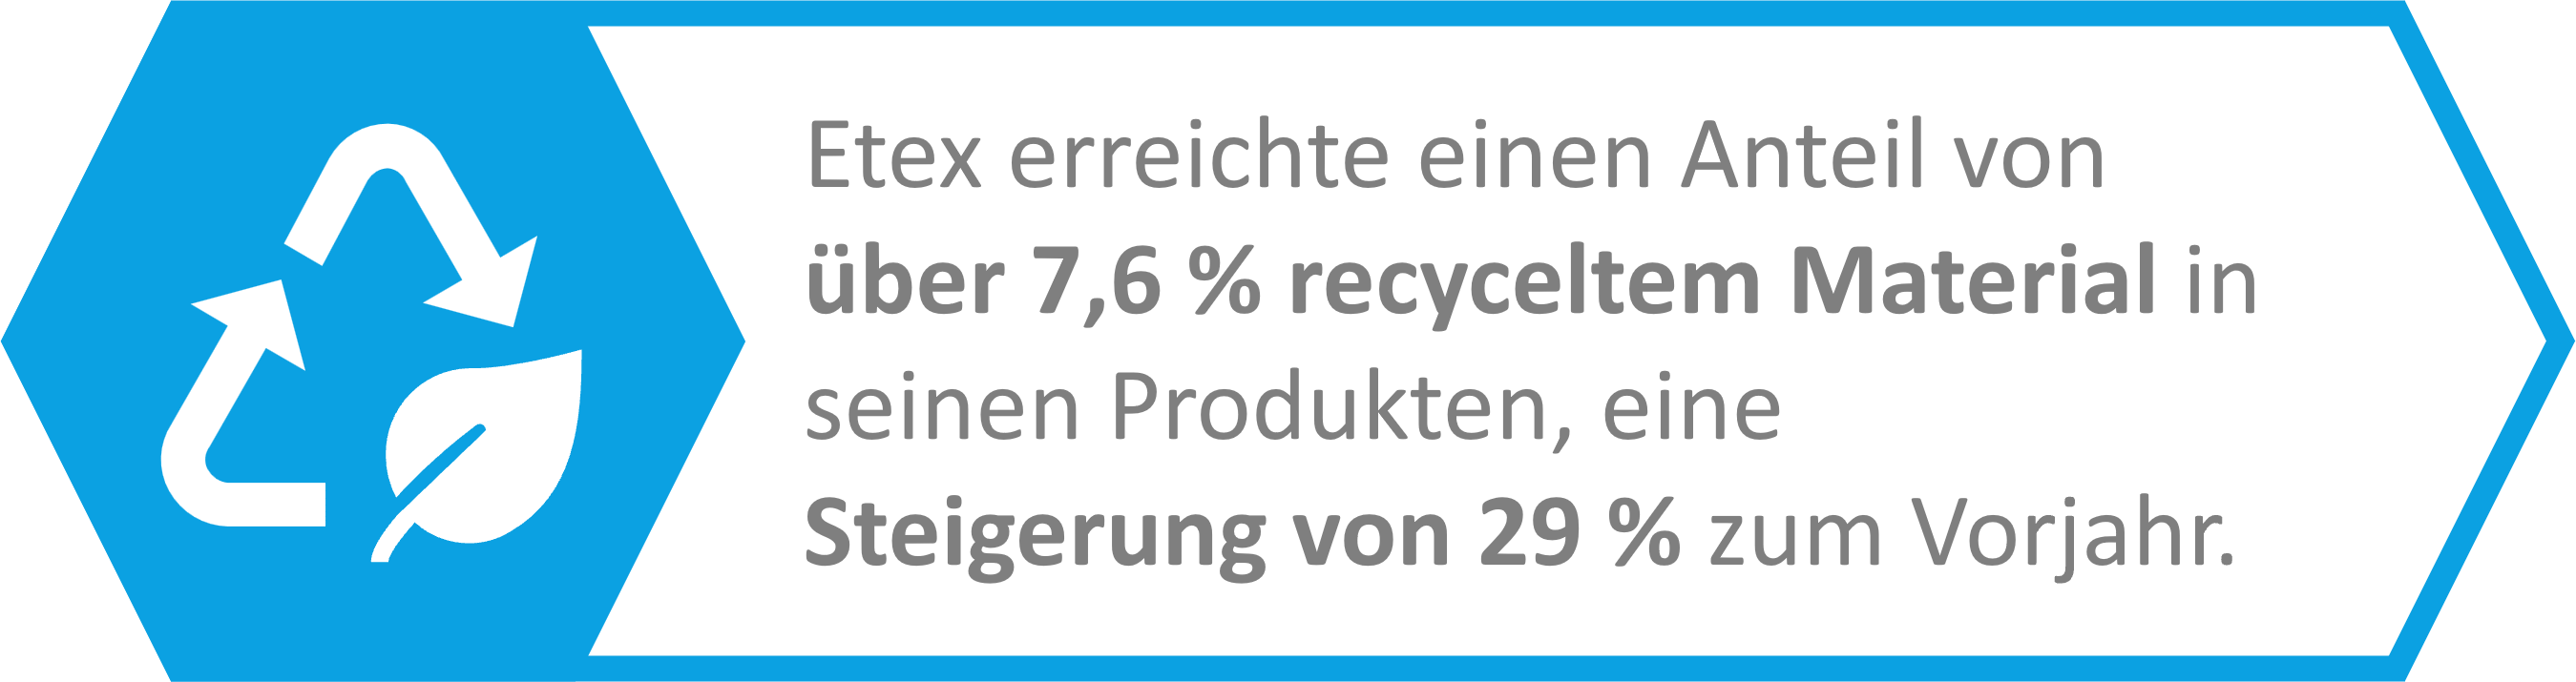 Etex erreichte einen Anteil von über 7,6 % recyceltem Material in seinen Produkten, eine Steigerung von 29 % zum Vorjahr.